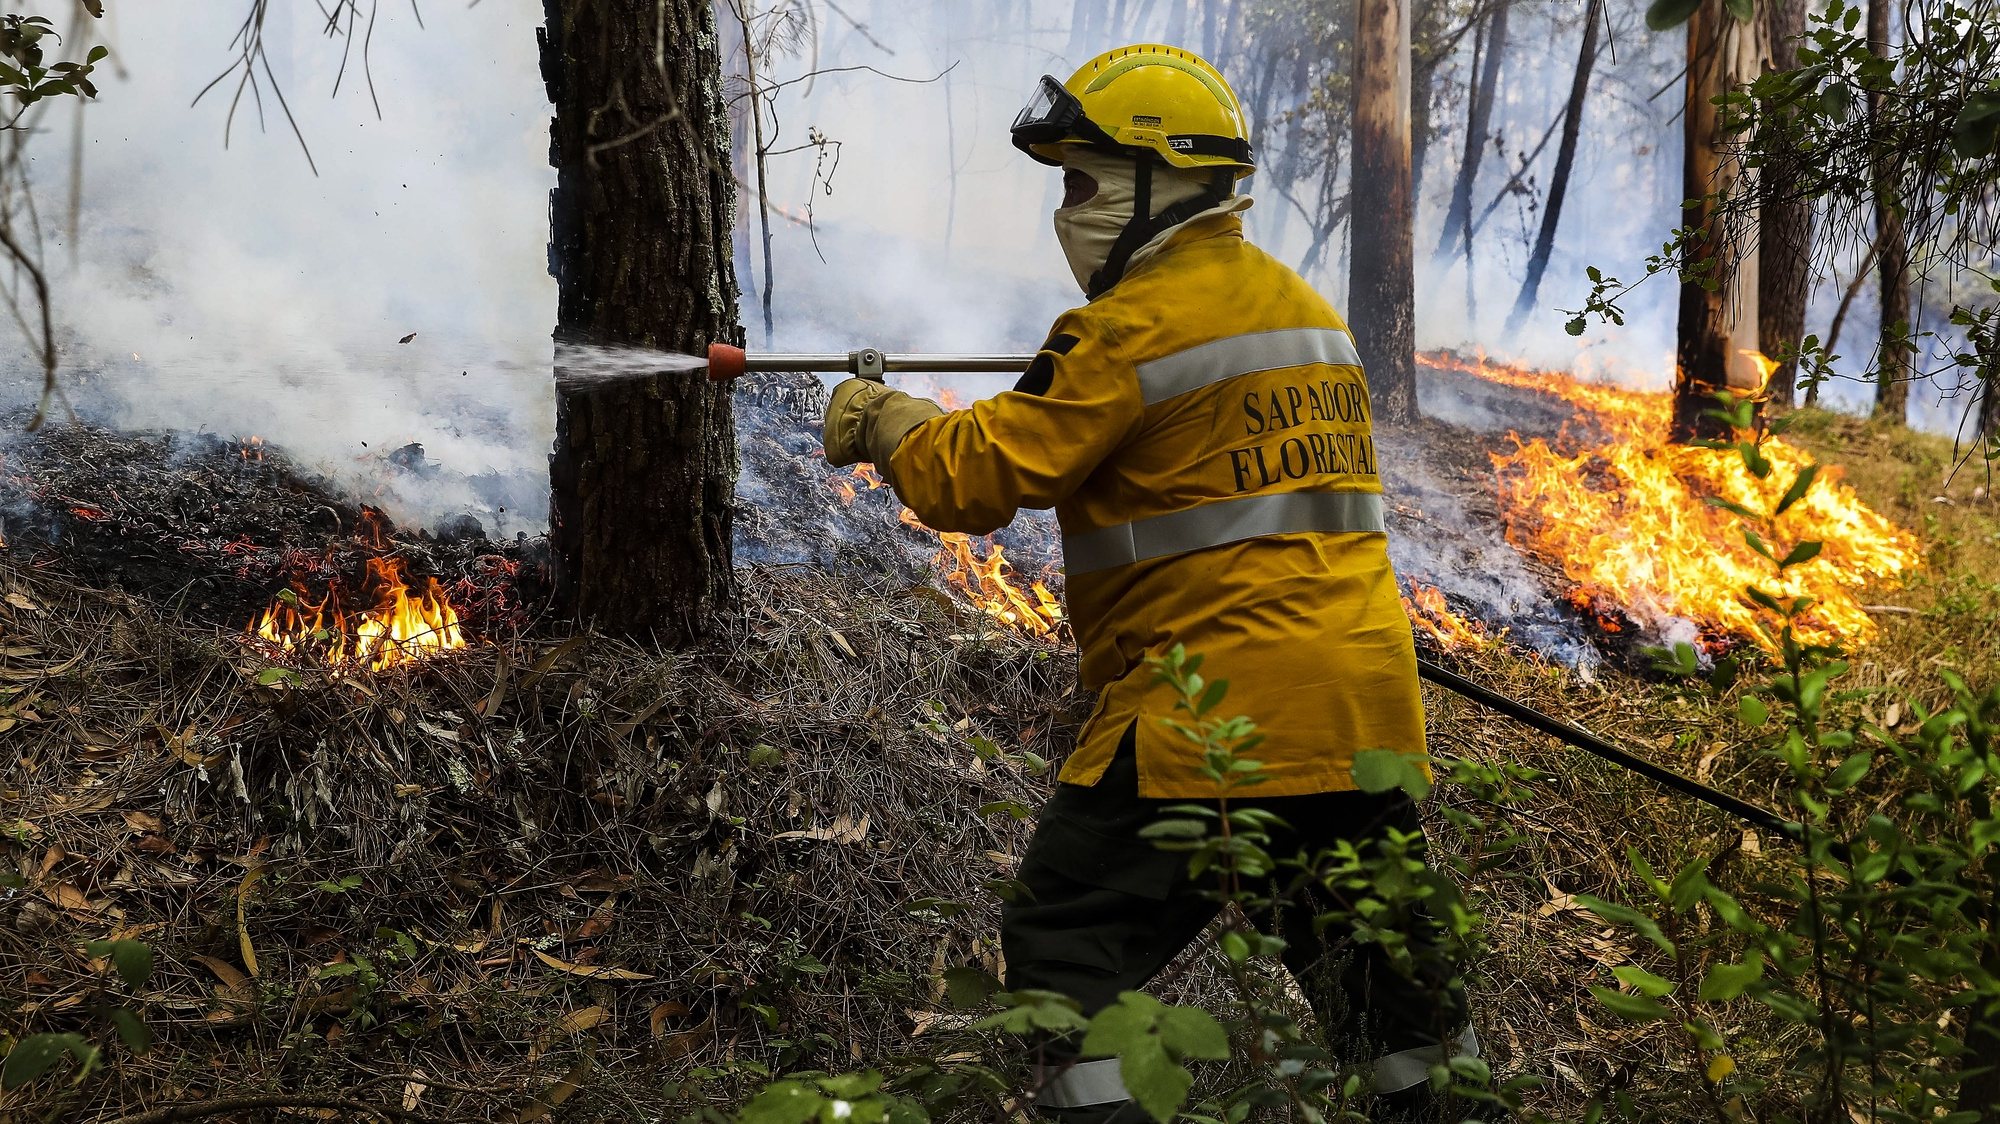 Um sapador florestal combate as chamas do fogo, junto à aldeia de Rebolo, durante o incêndio que começou em Abiul, Pombal, na passada sexta-feira, Rebolo, Ansião, 14 de julho de 2022. PAULO NOVAIS/LUSA